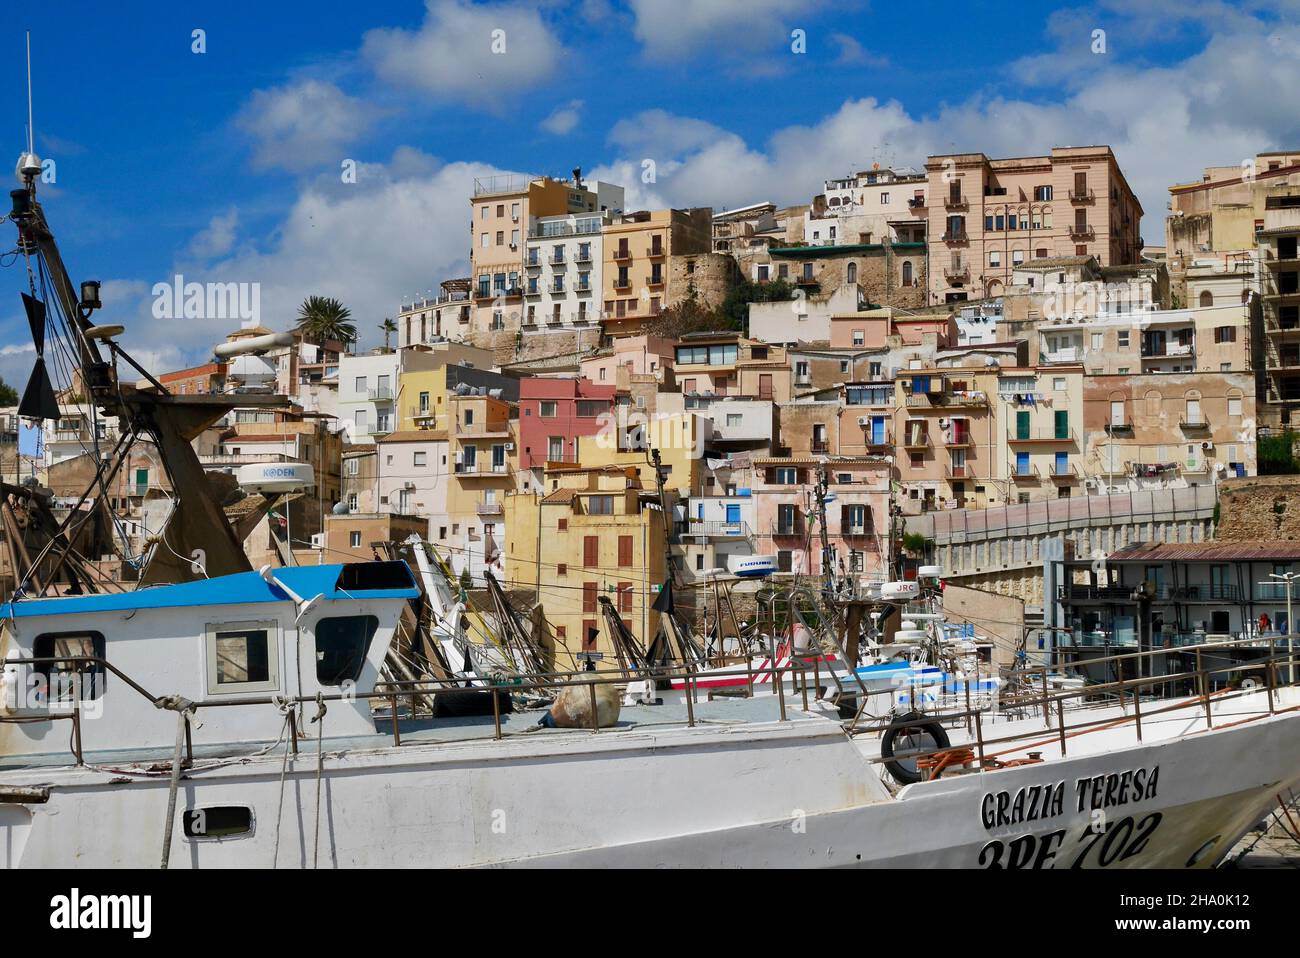 Sciacca, Sicilia, Italia, 24.03.2018. Barche da pesca nel porto con case colorate della città vecchia sullo sfondo. Foto Stock